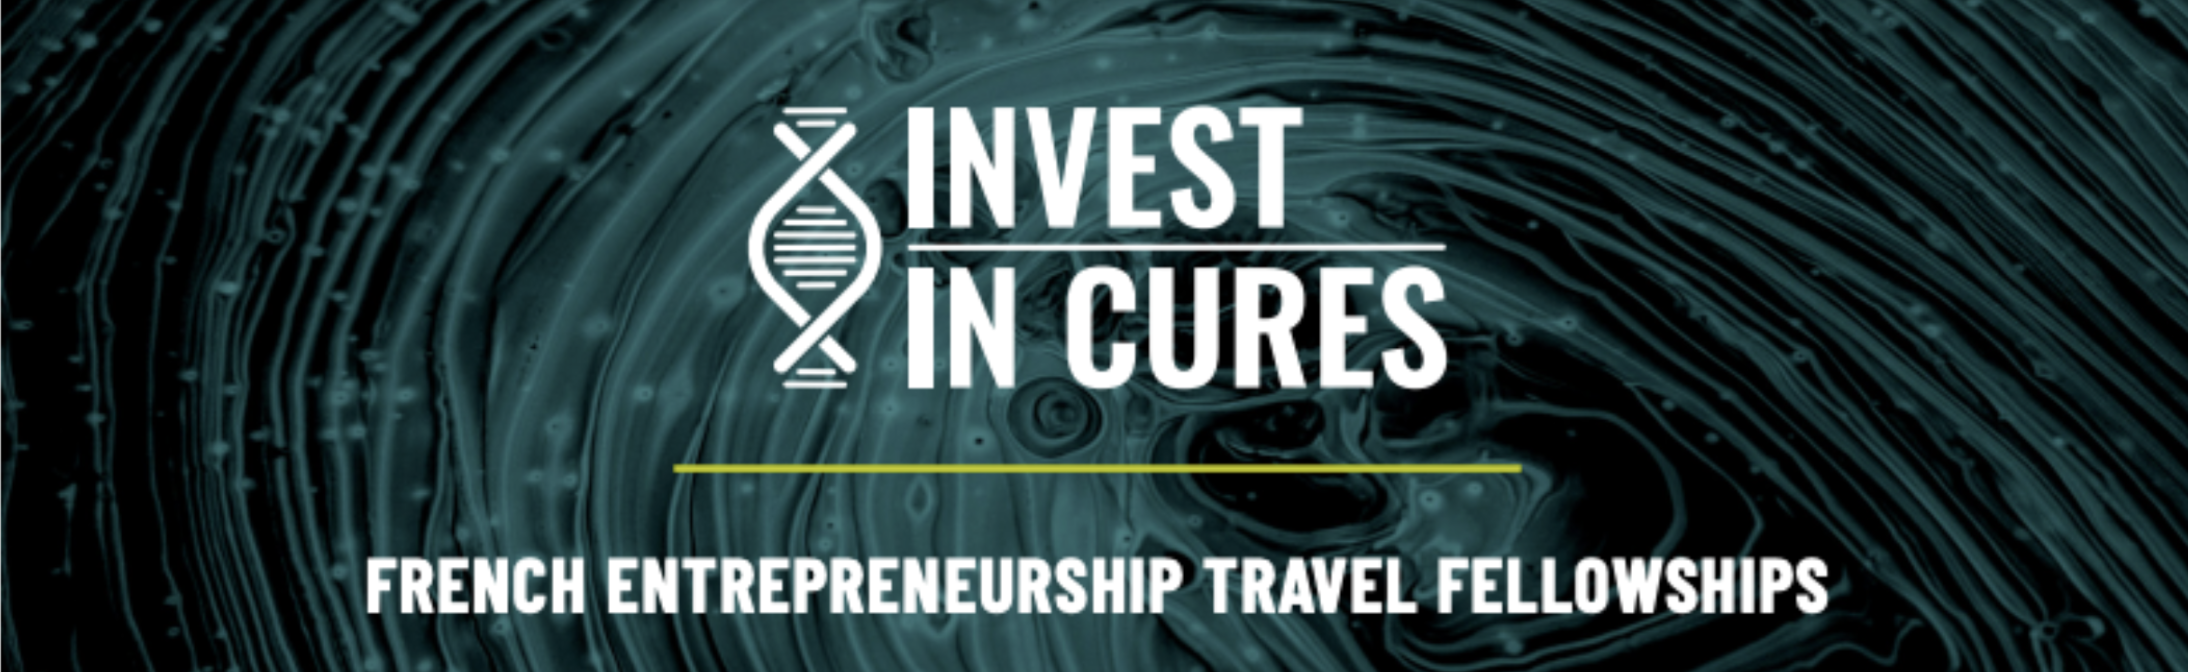 Appel à Projet : La fondation Ipsen offre des bourses de voyage pour Invest In Cures à San Francisco